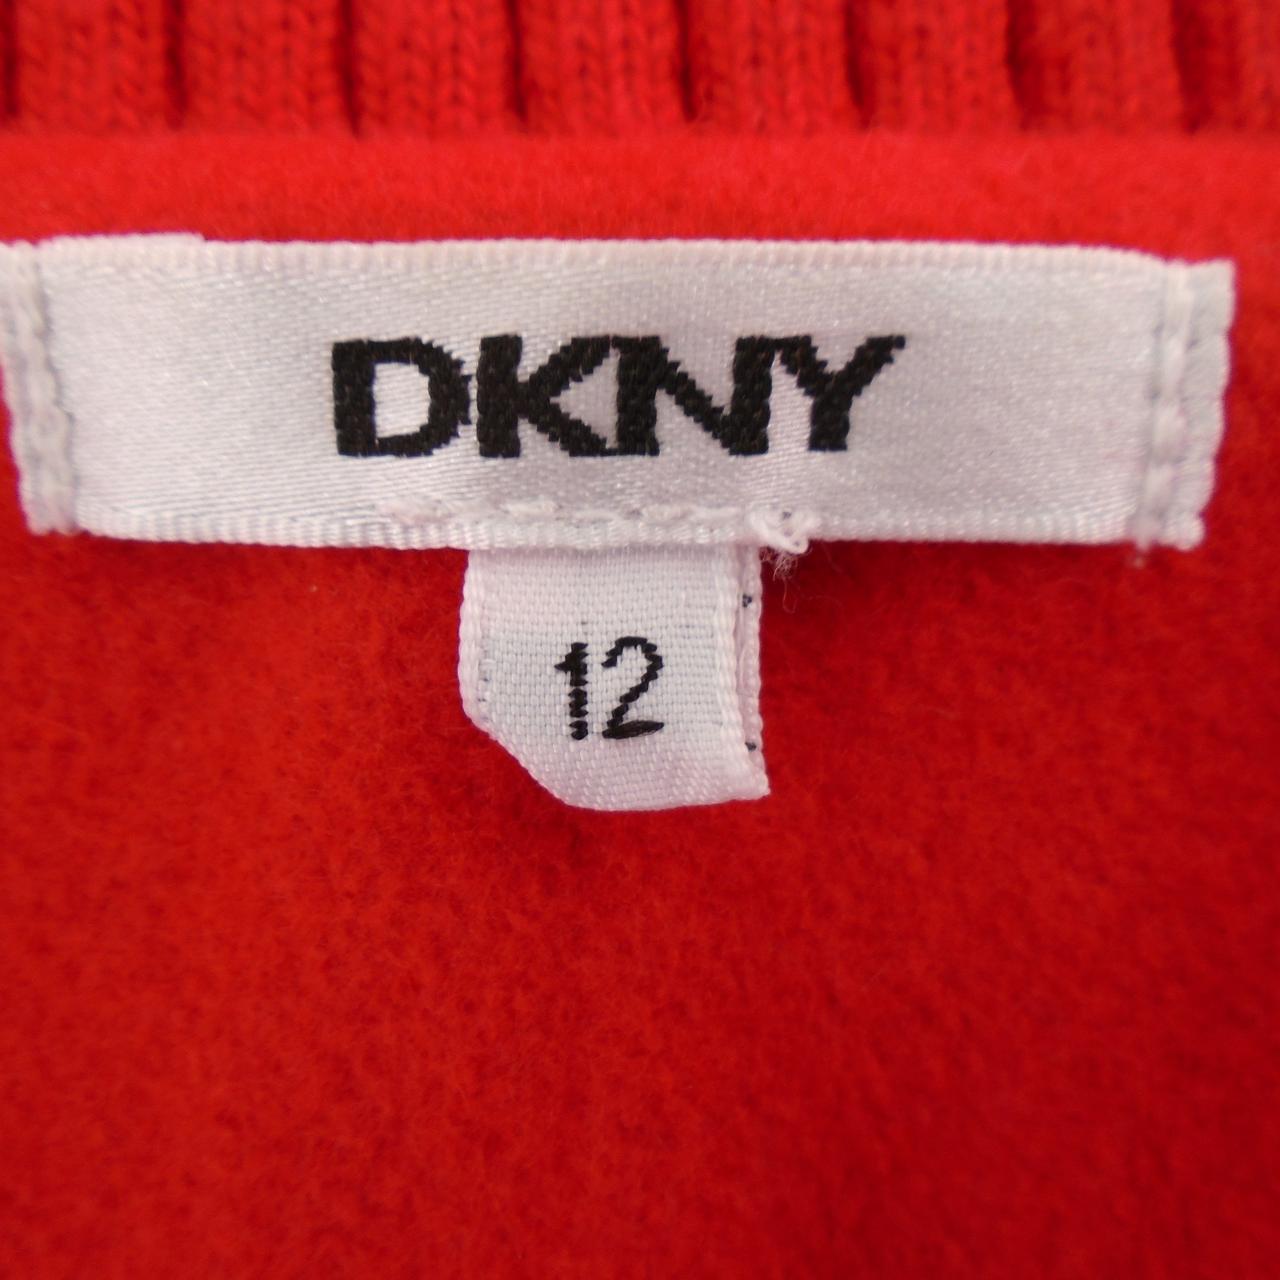 Damenmantel DKNY. Rot. S. Gebraucht. Gut